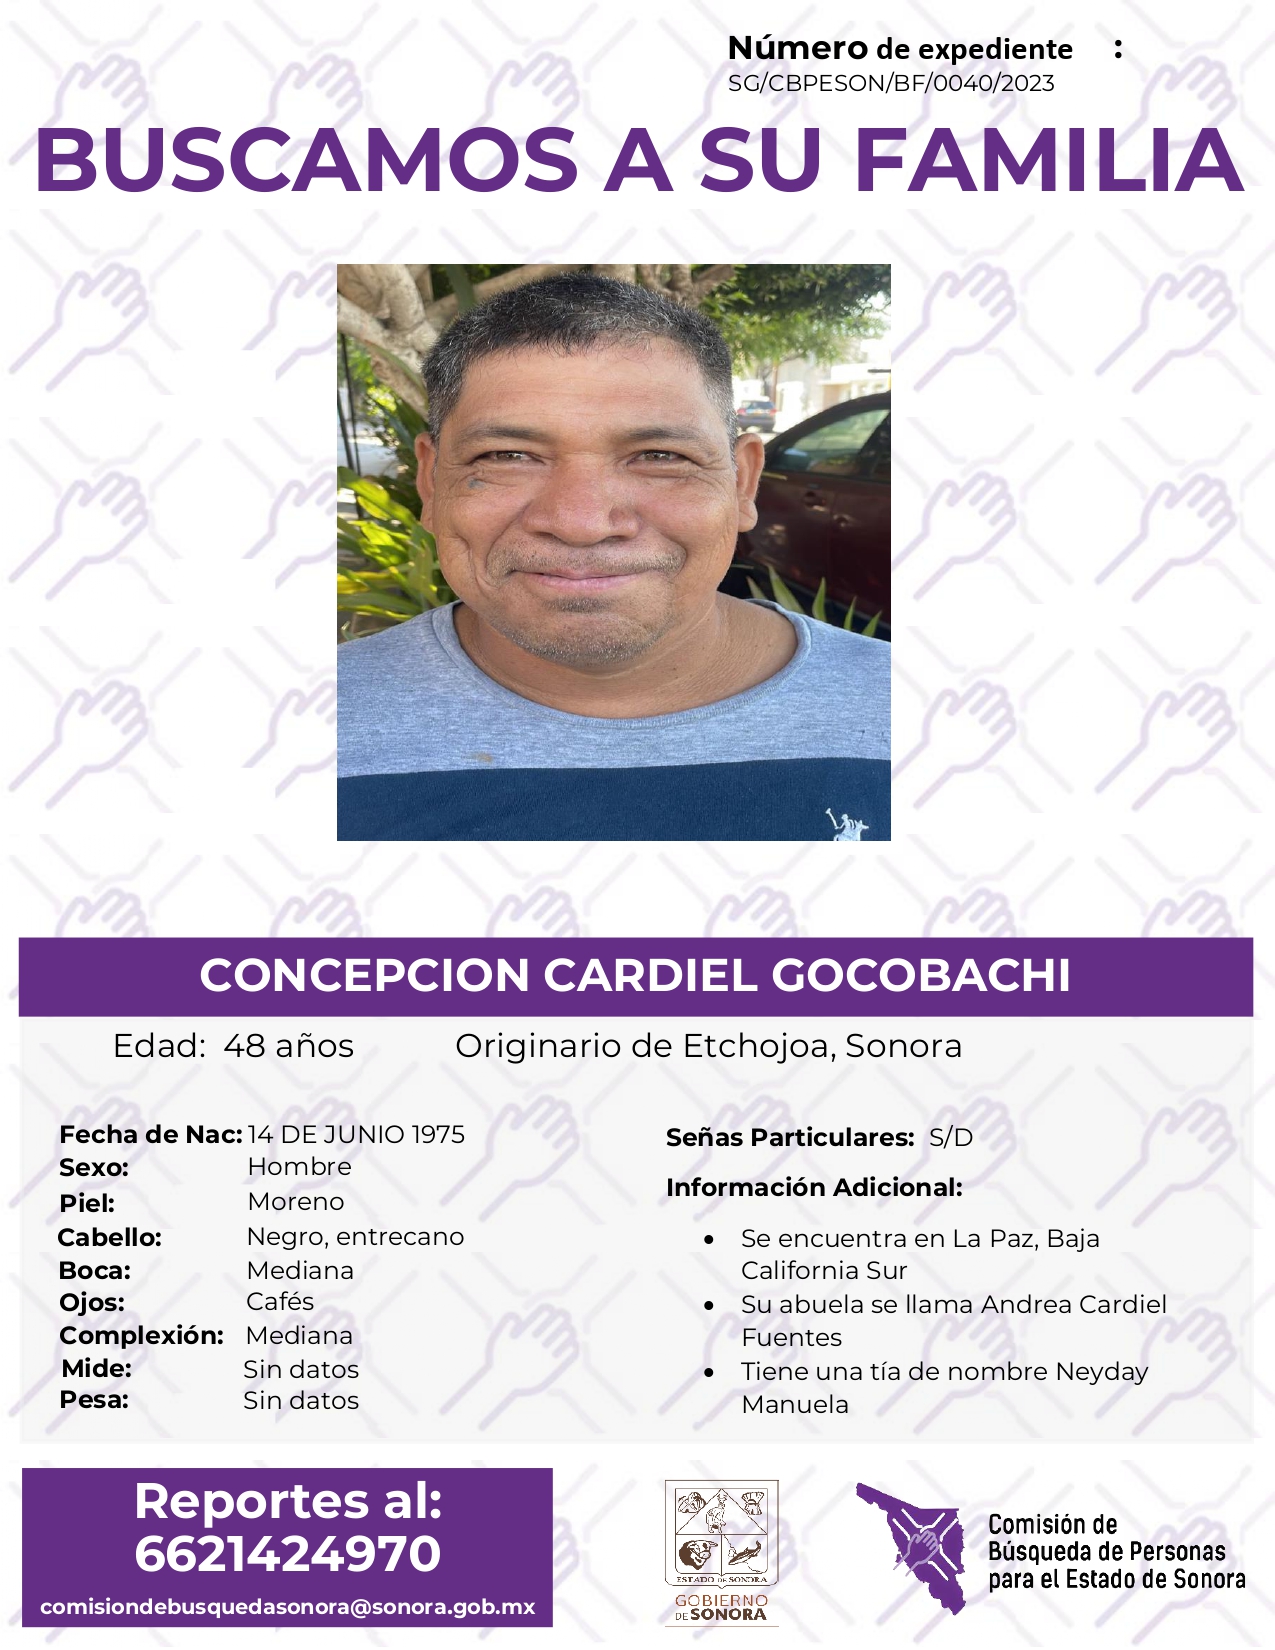 CONCEPCION CARDIEL GOCOBACHI - BUSQUEDA DE FAMILIA